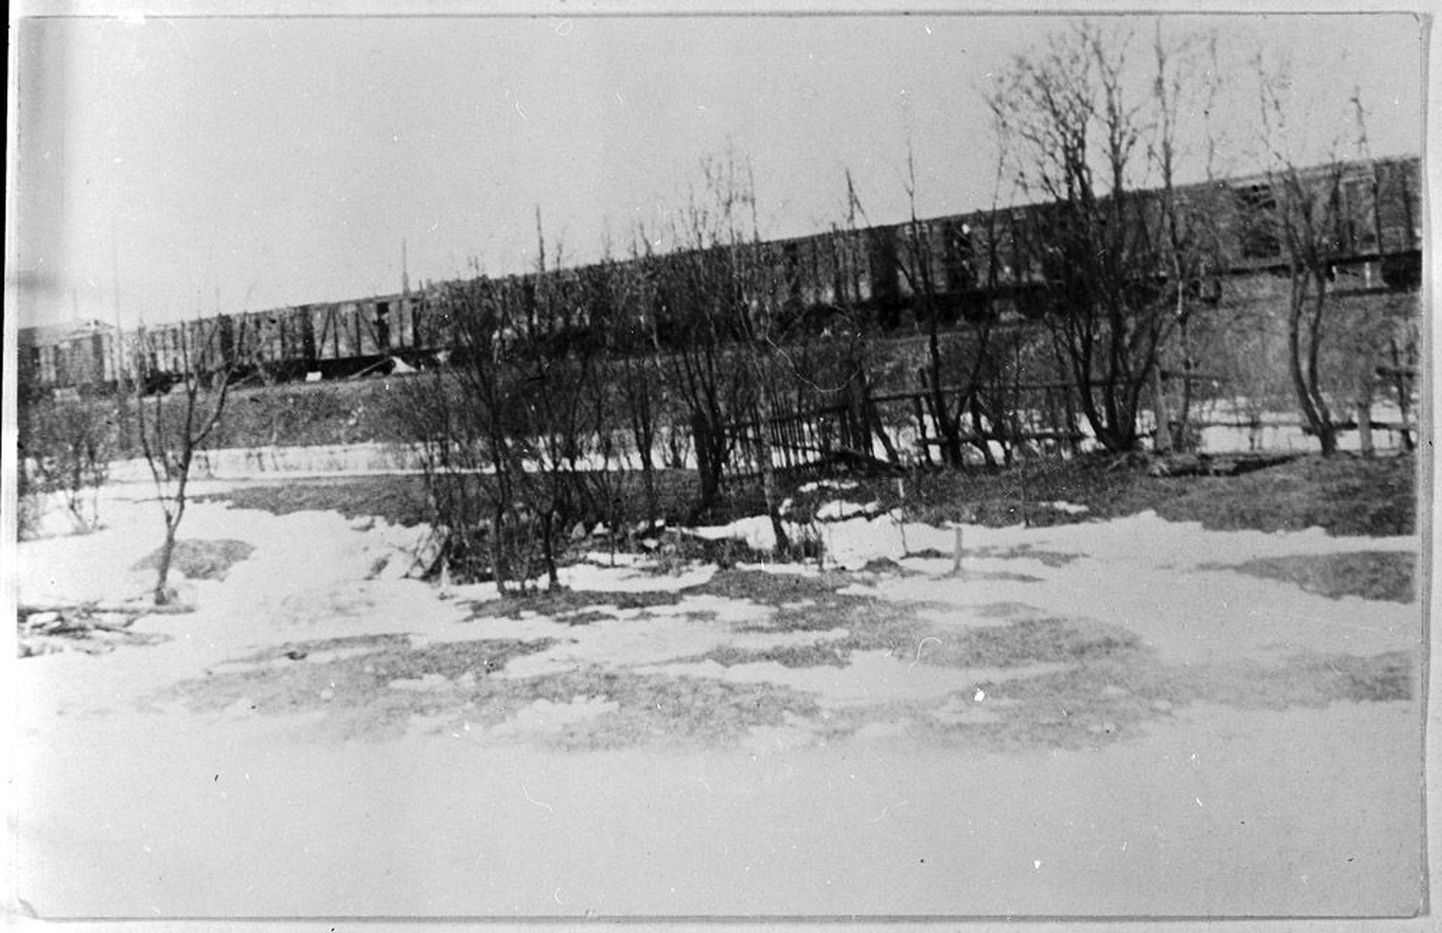 Tuhat vagunitäit inimesi: märtsiküüditatud saadeti Siberi poole teele 1057 raudteevagunis. Selle küüditamisrongi jäädvustas Keilas 25. märtsil 1949 fotole Gustav Kulp.